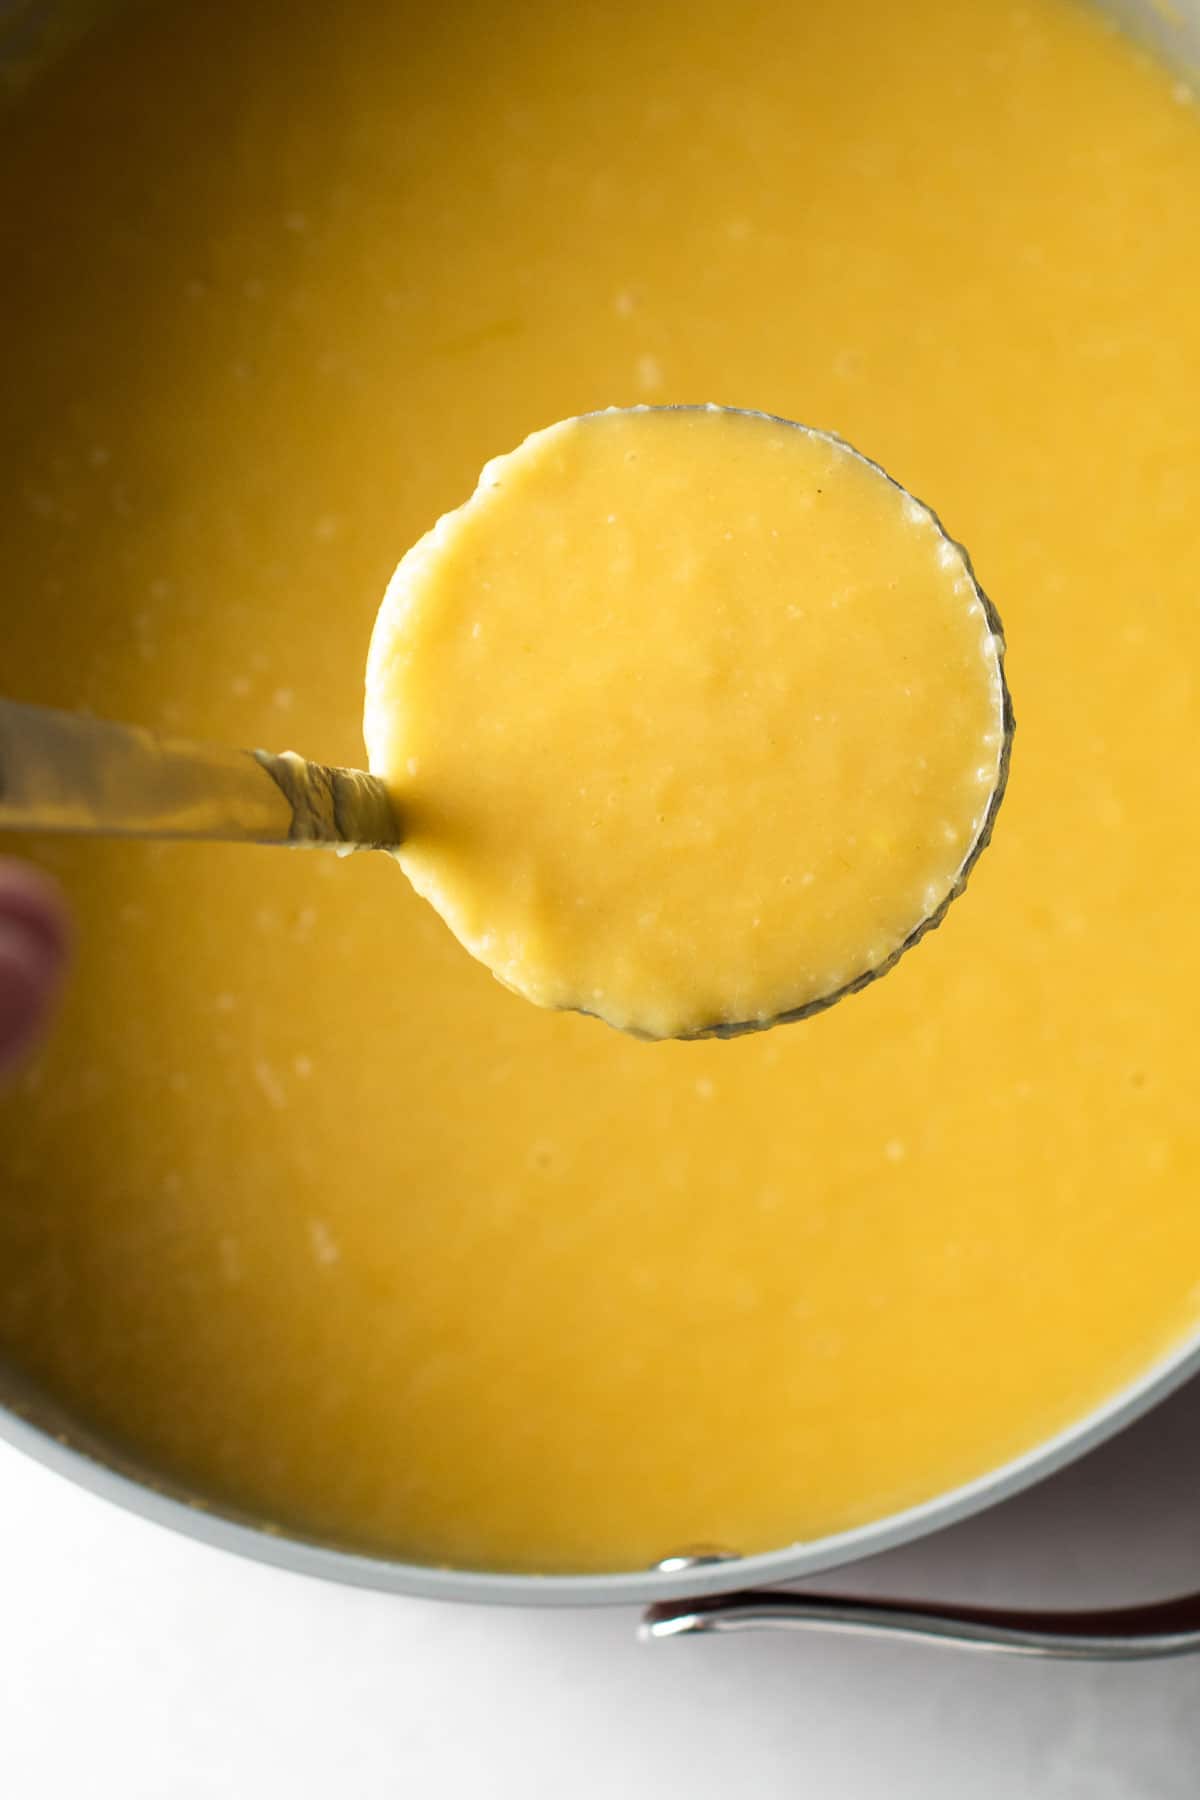 Pureed potato leek soup.